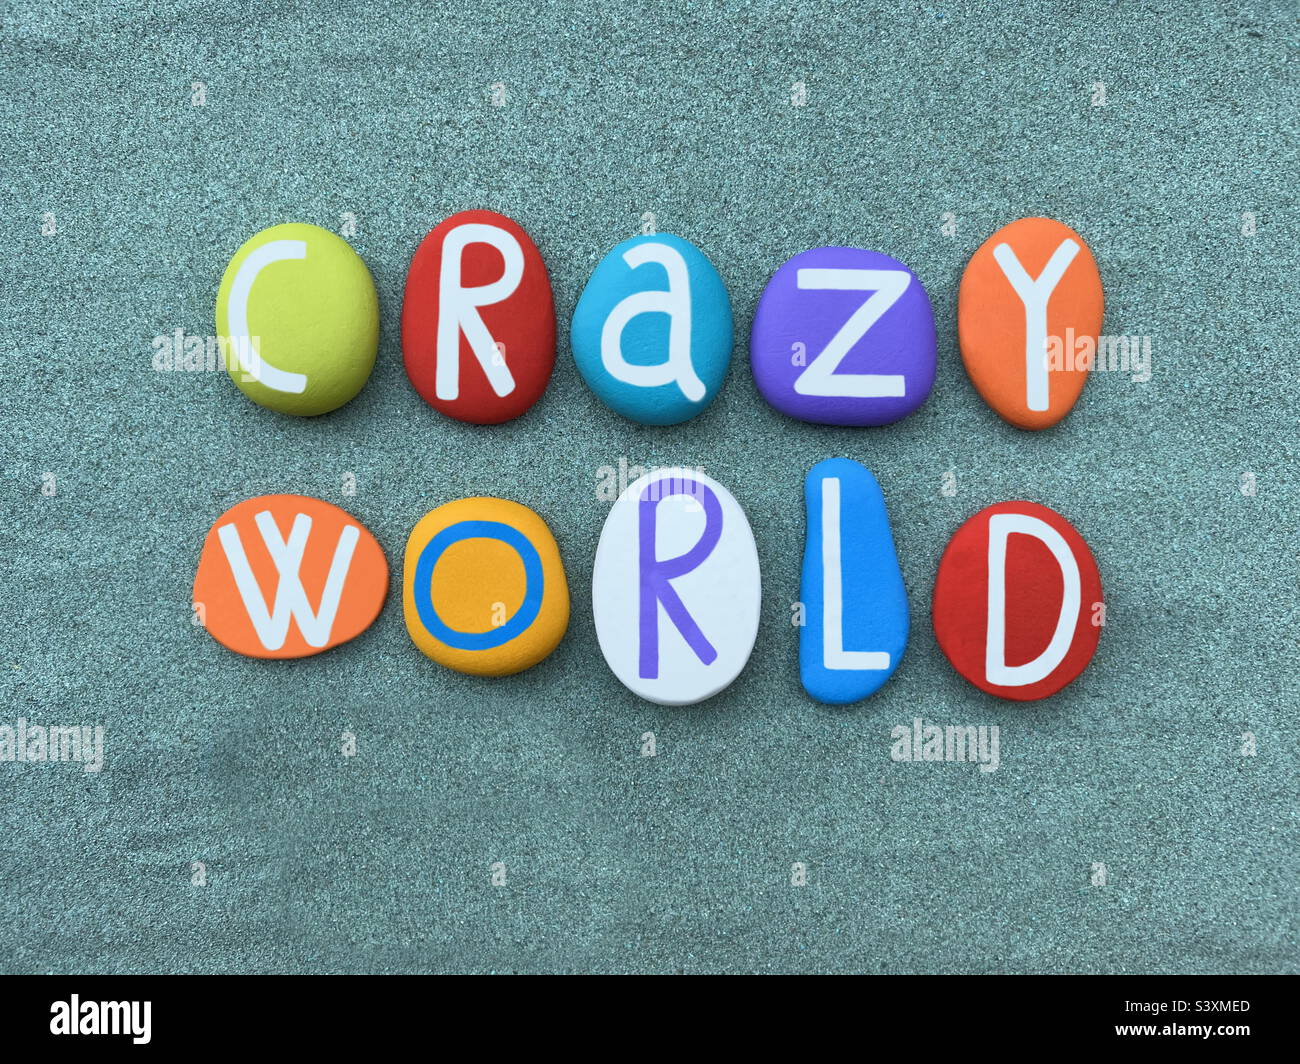 Mundo loco, texto creativo compuesto con letras de piedra multicolor sobre arena verde Foto de stock